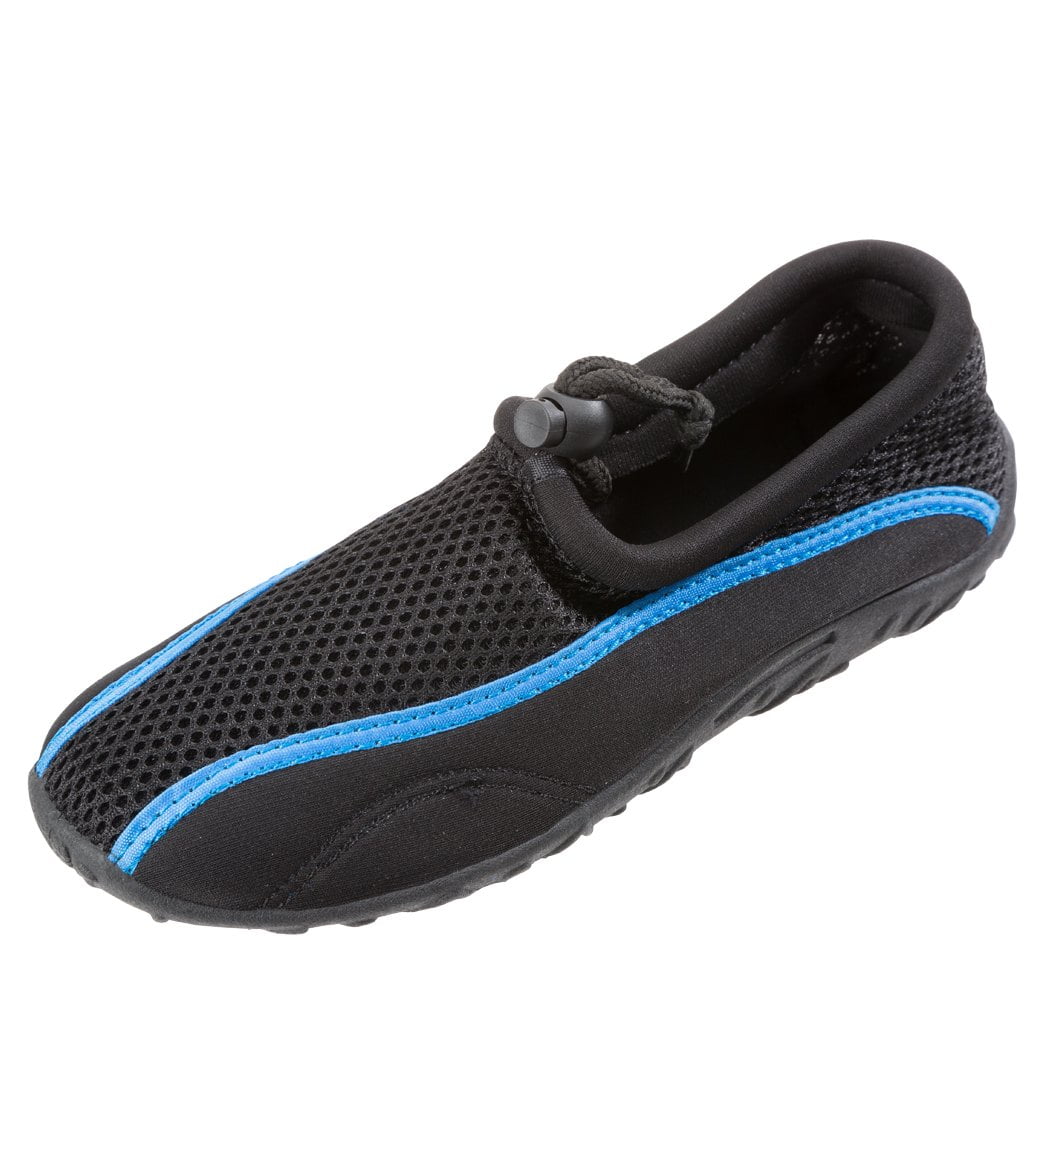 Sporti Women's Adjustable Water Shoes - Walmart.com